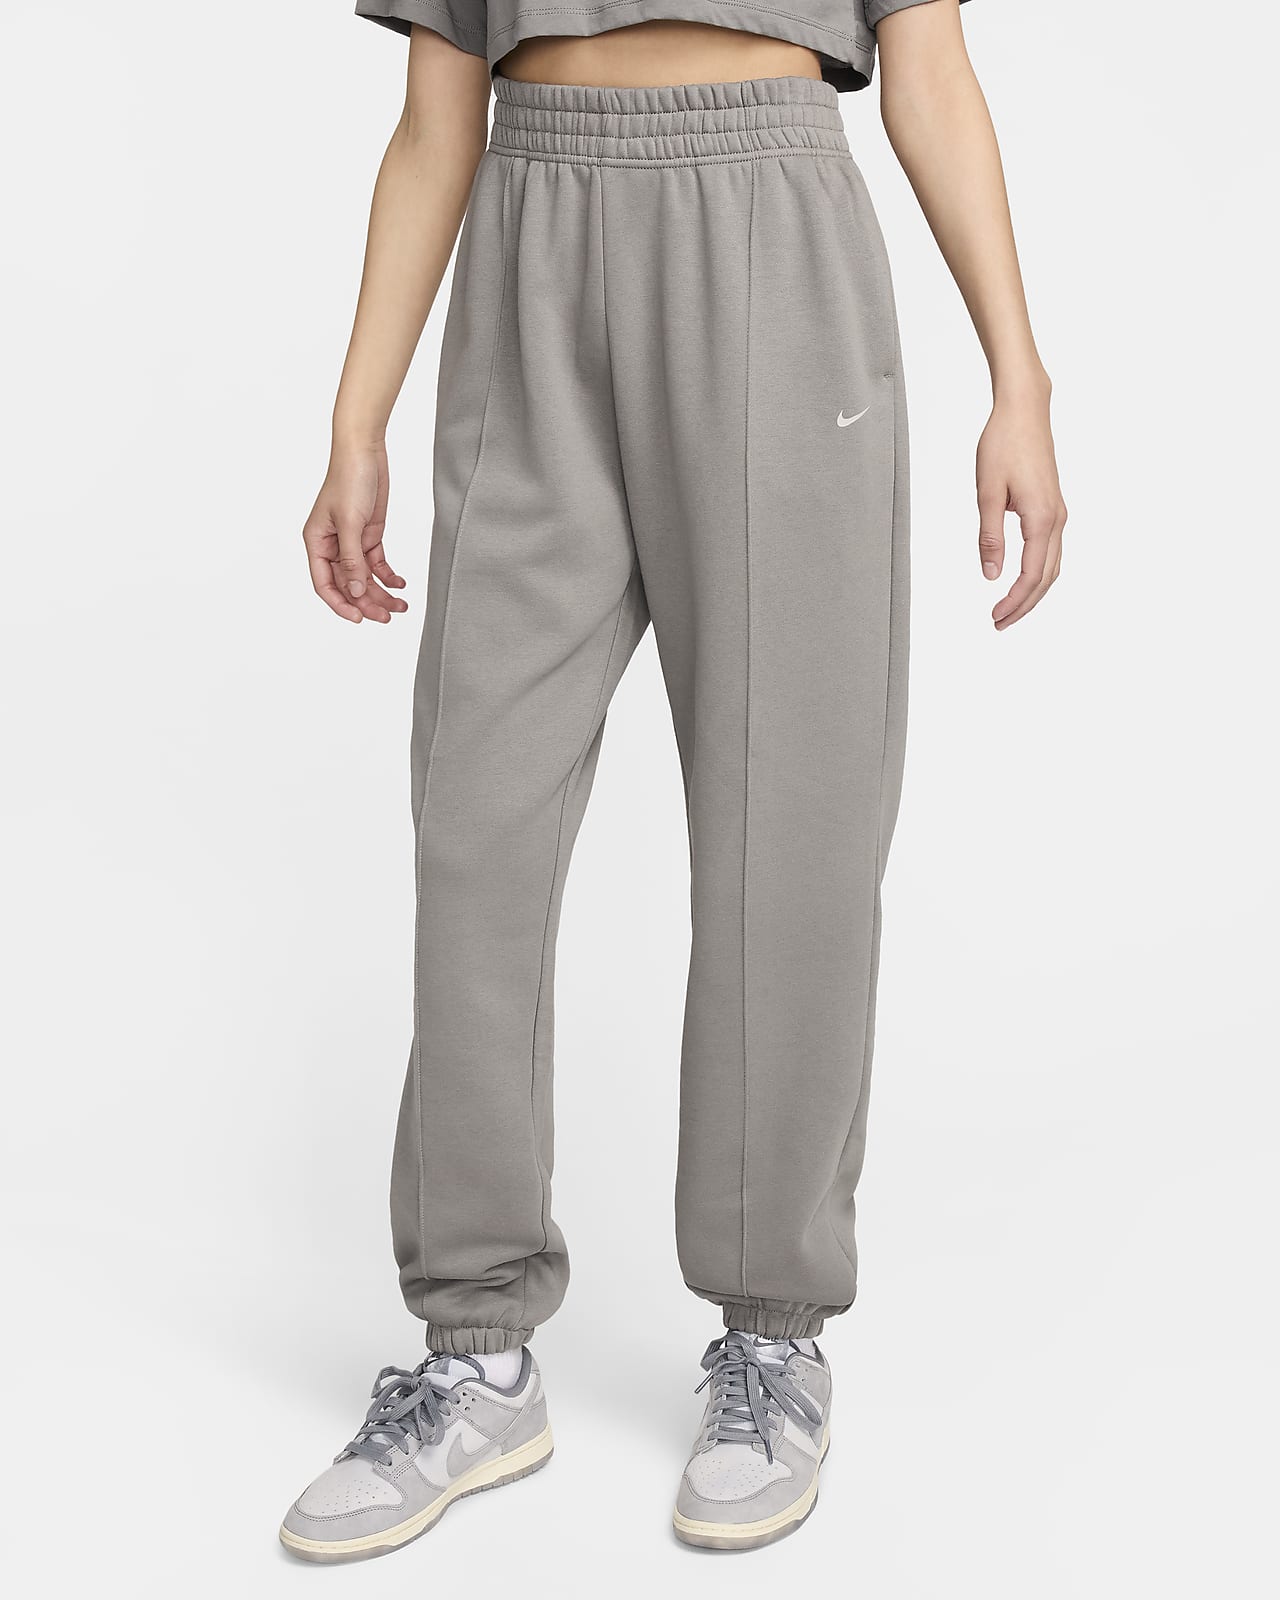 Pantalon coupe ample en tissu Fleece Nike Sportswear pour femme